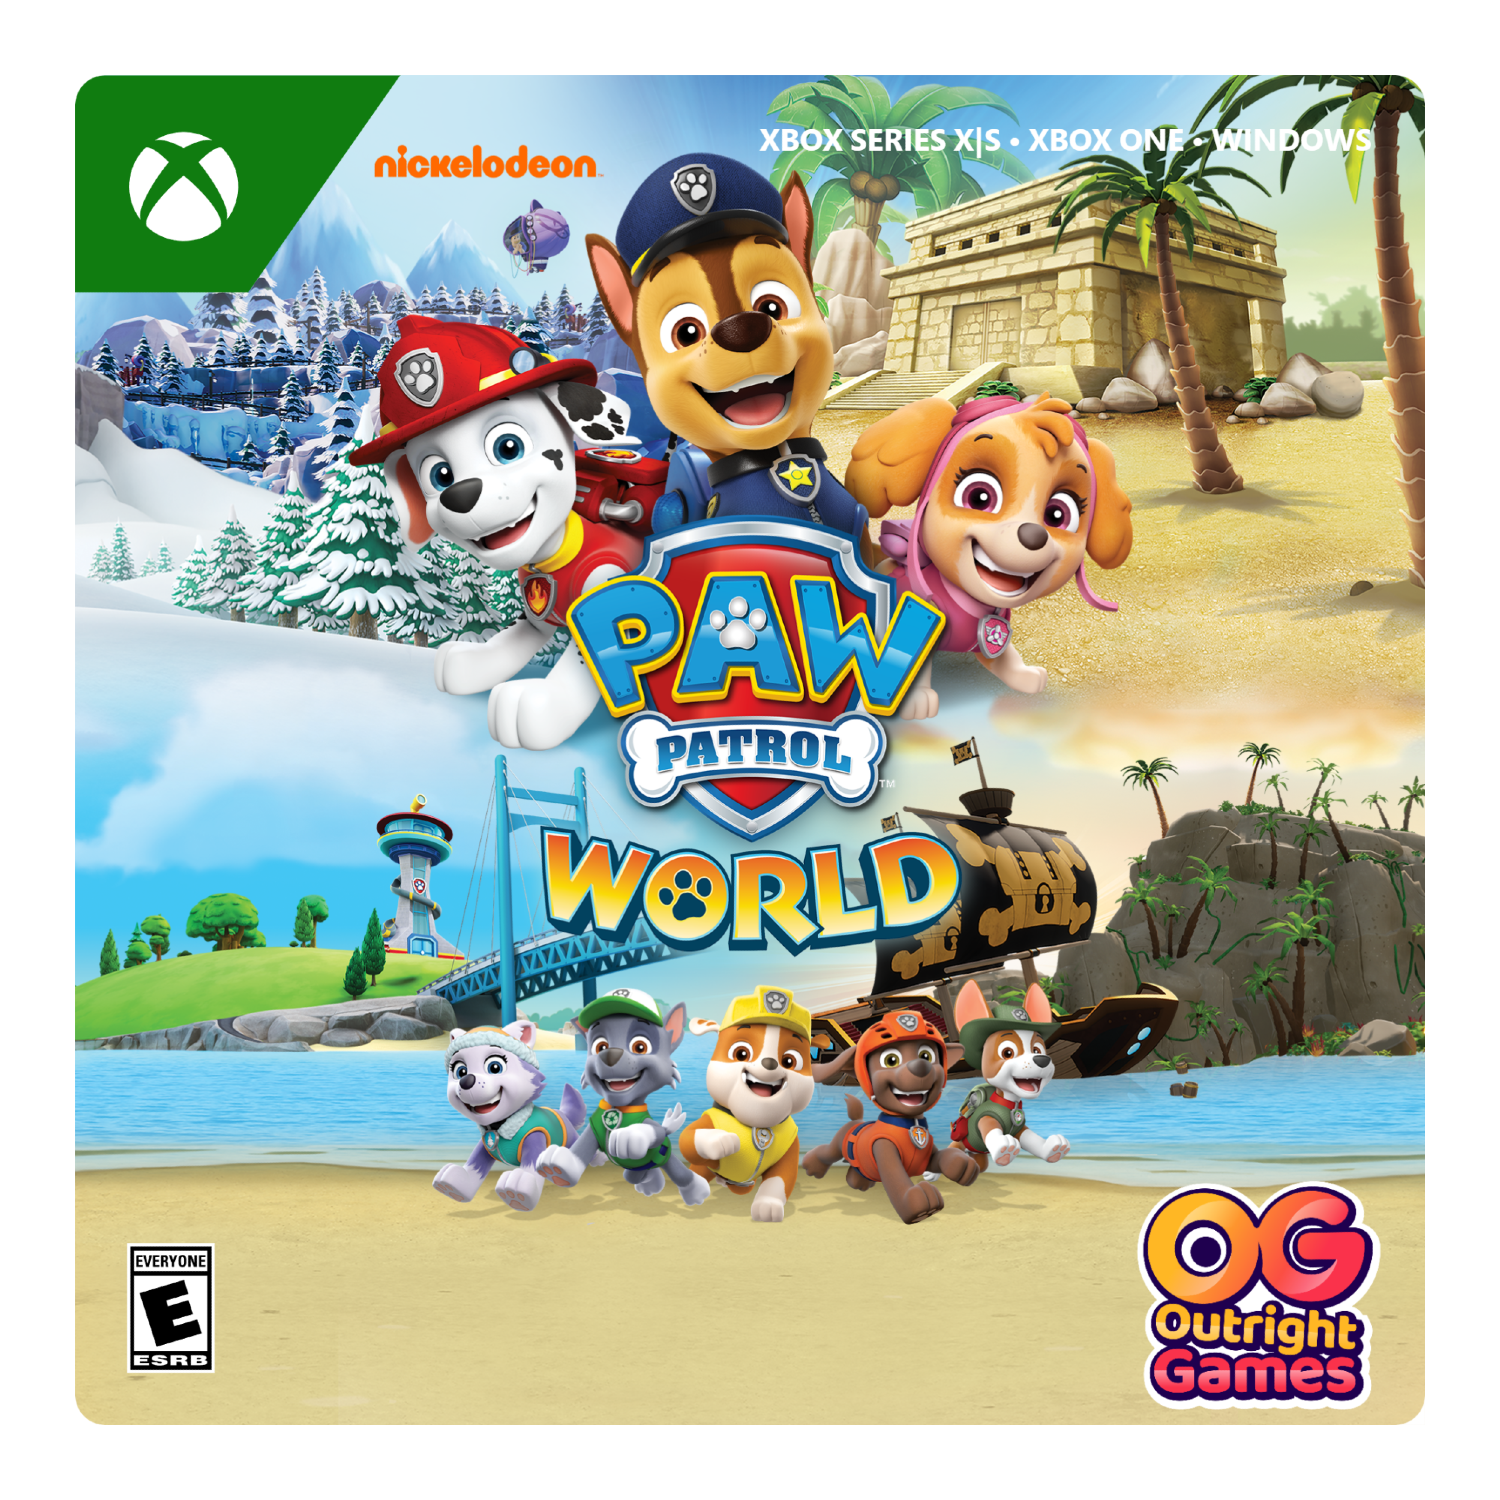 Paw Patrol World - Xbox Series X|S, Xbox One, Windows [Digital]